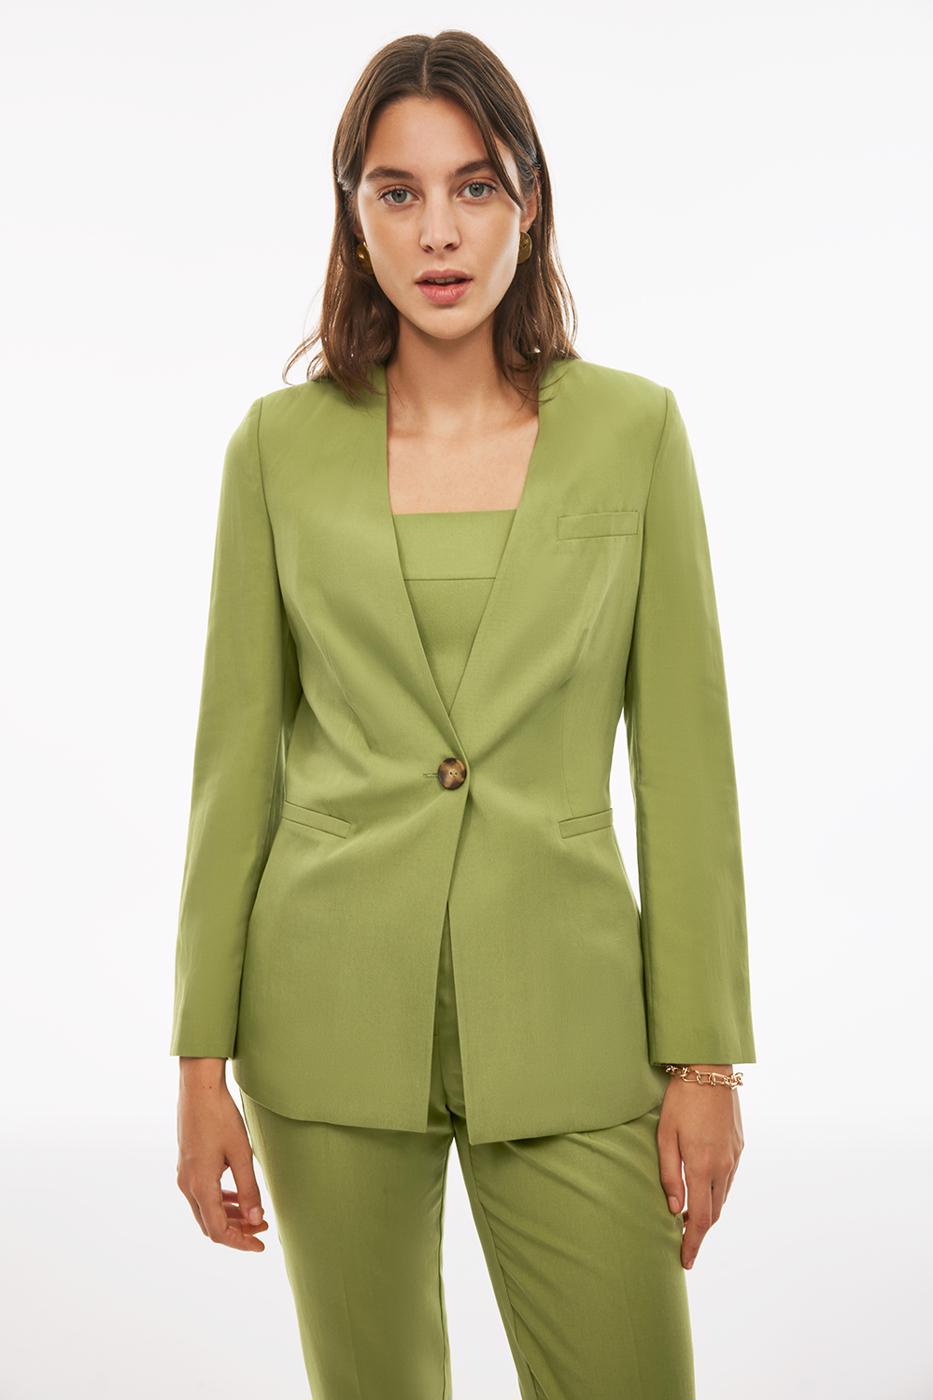 Bayan YEŞİL Blannes Regular Fit Standart Boy Takma Kol Açık Yeşil Renk Kadın Ceket